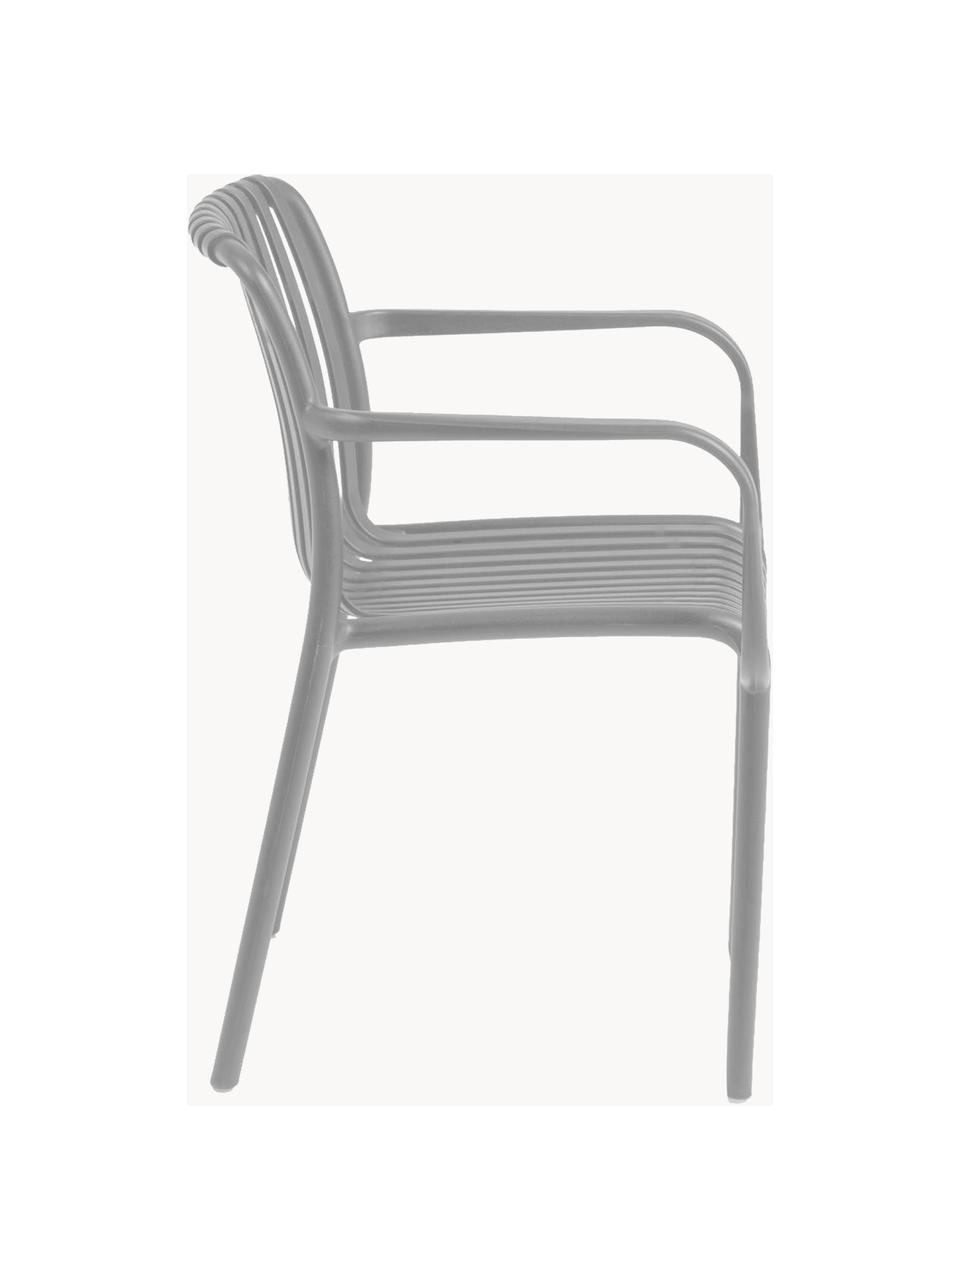 Krzesło ogrodowe z podłokietnikami Isabellini, Tworzywo sztuczne, Szary, S 54 x G 49 cm